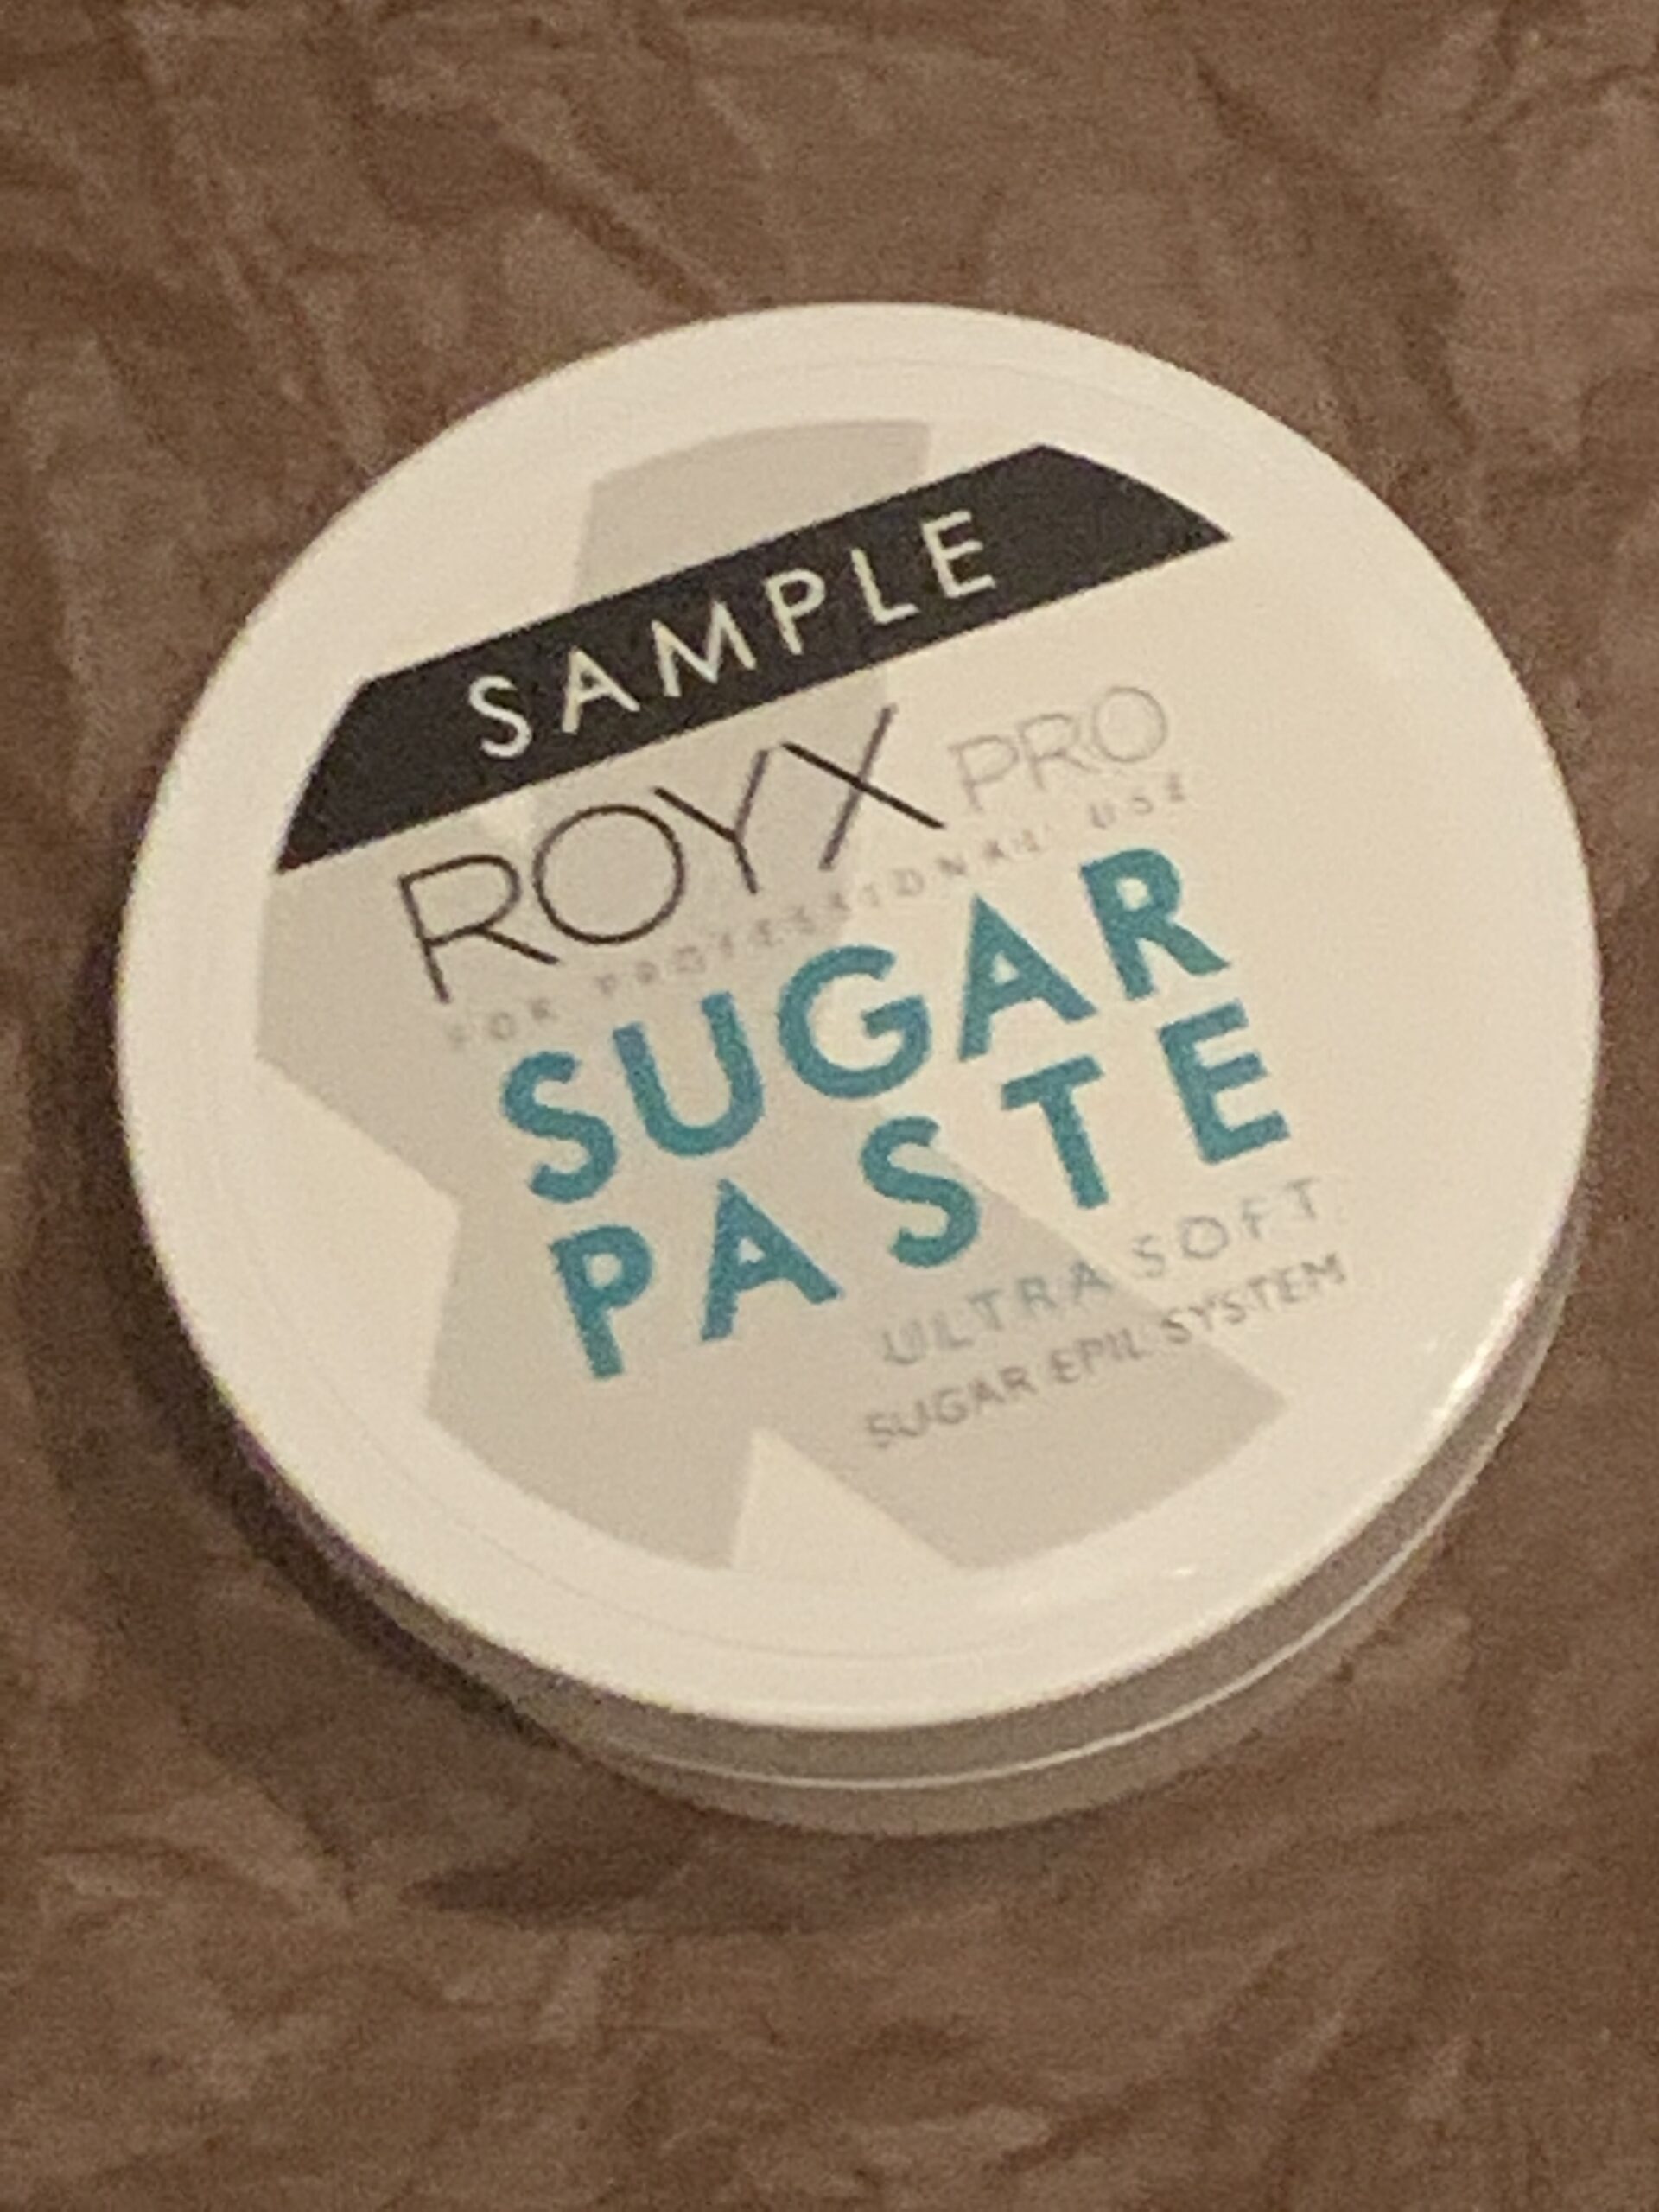 Royx sugarpaste